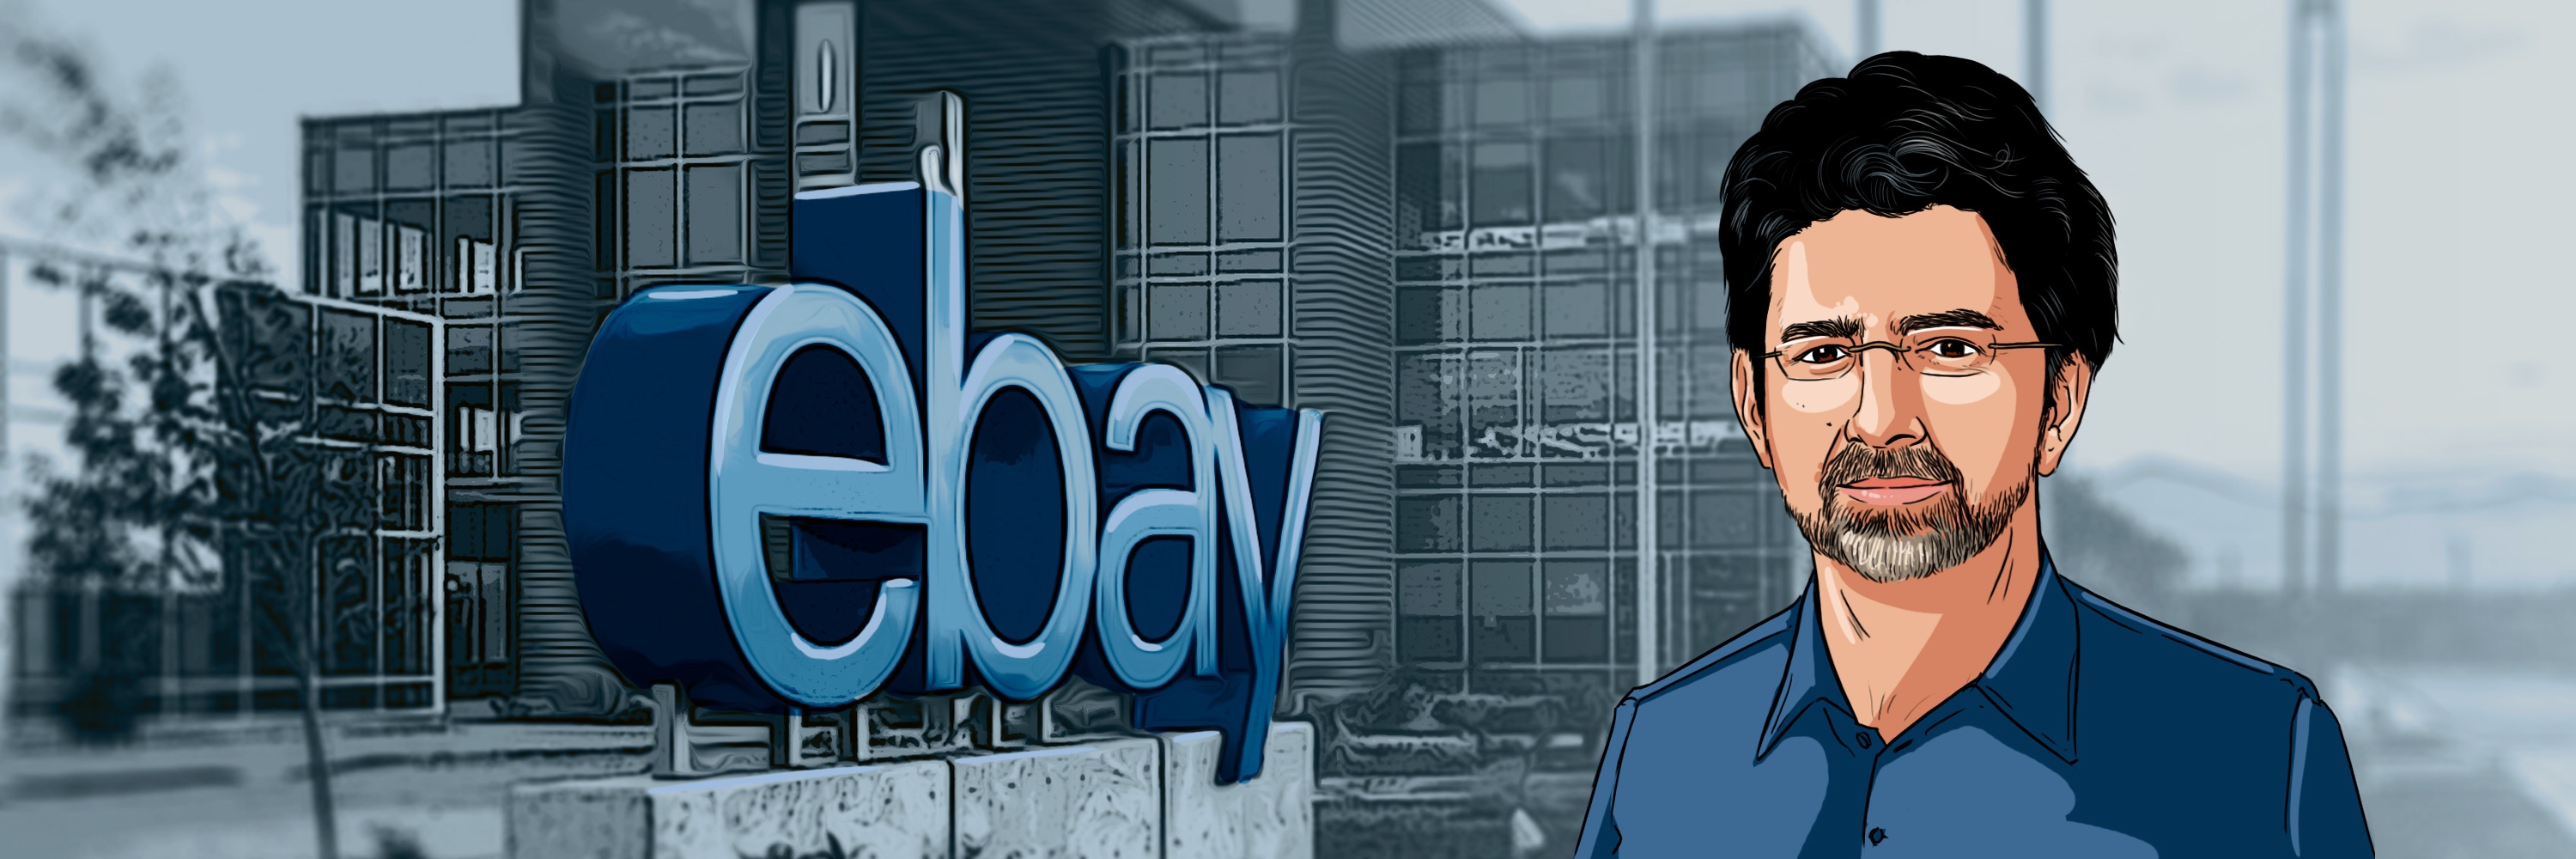 Pierre-Omidyar-Fundador-de-eBay